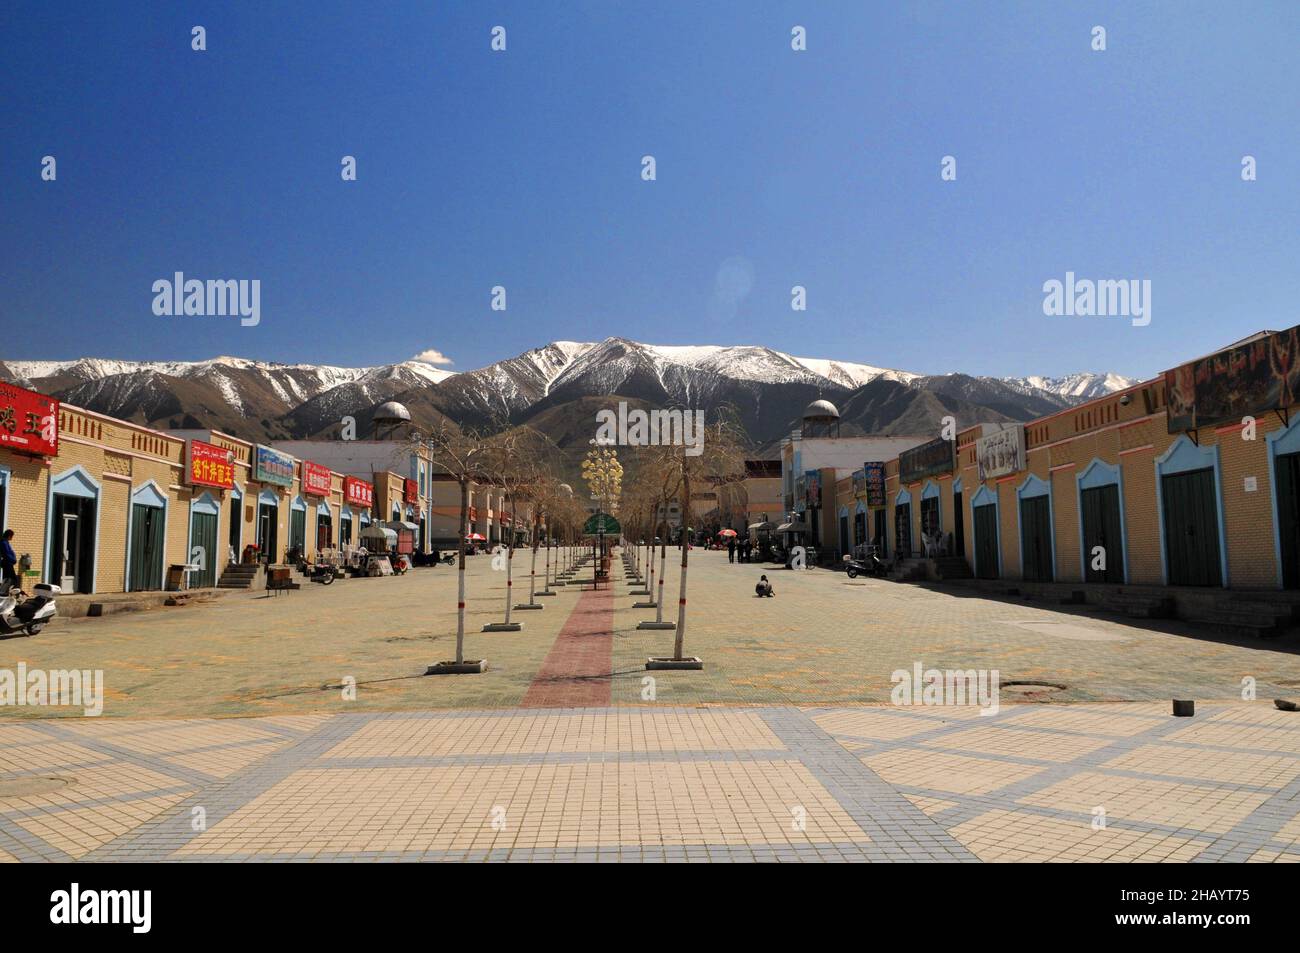 La place commerciale d'une petite ville dans le nord de la province du Xinjiang en Chine. Banque D'Images